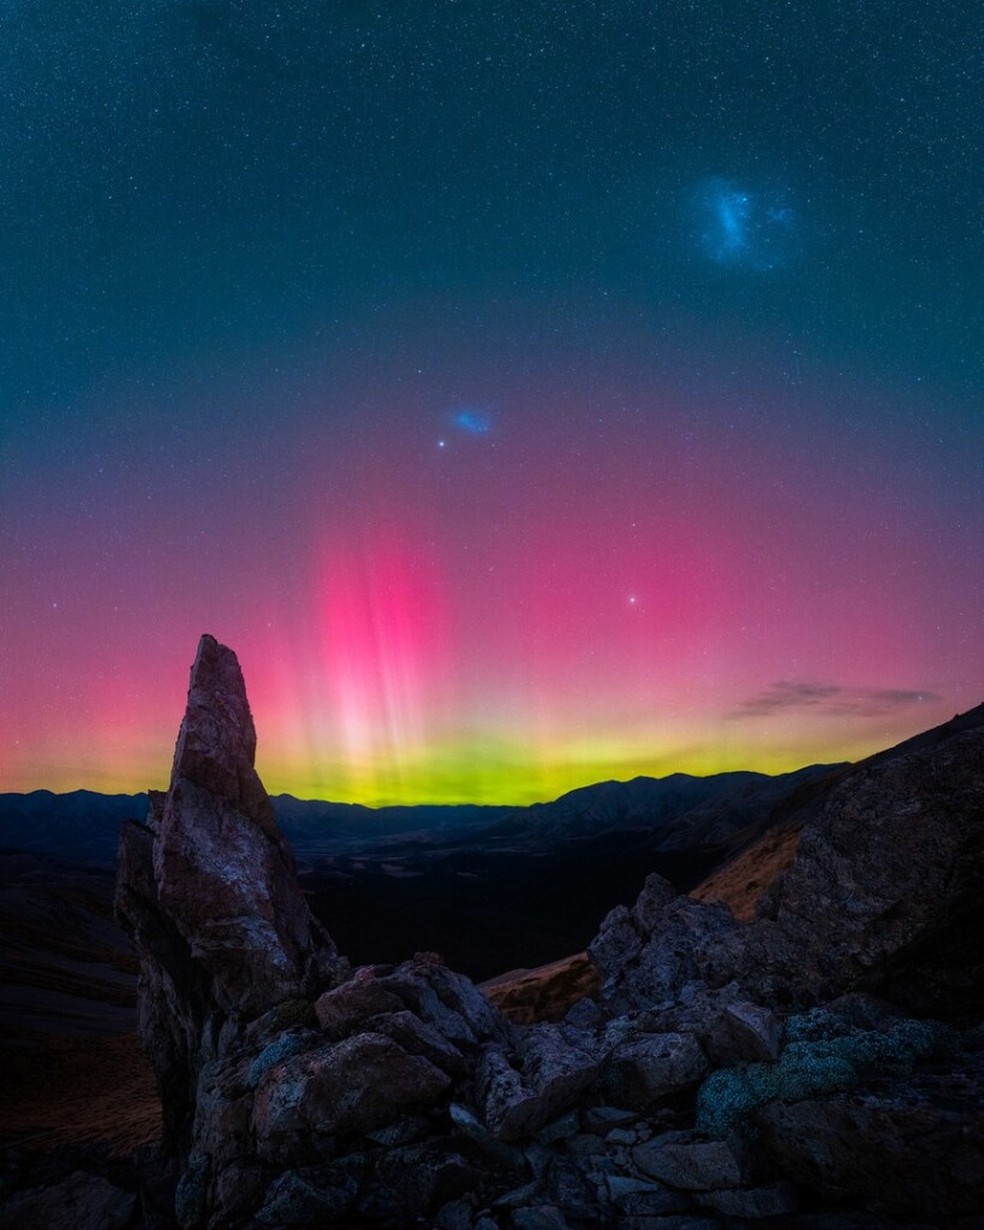 O raro vislume das auroras boreais nas melhores imagens de 2023